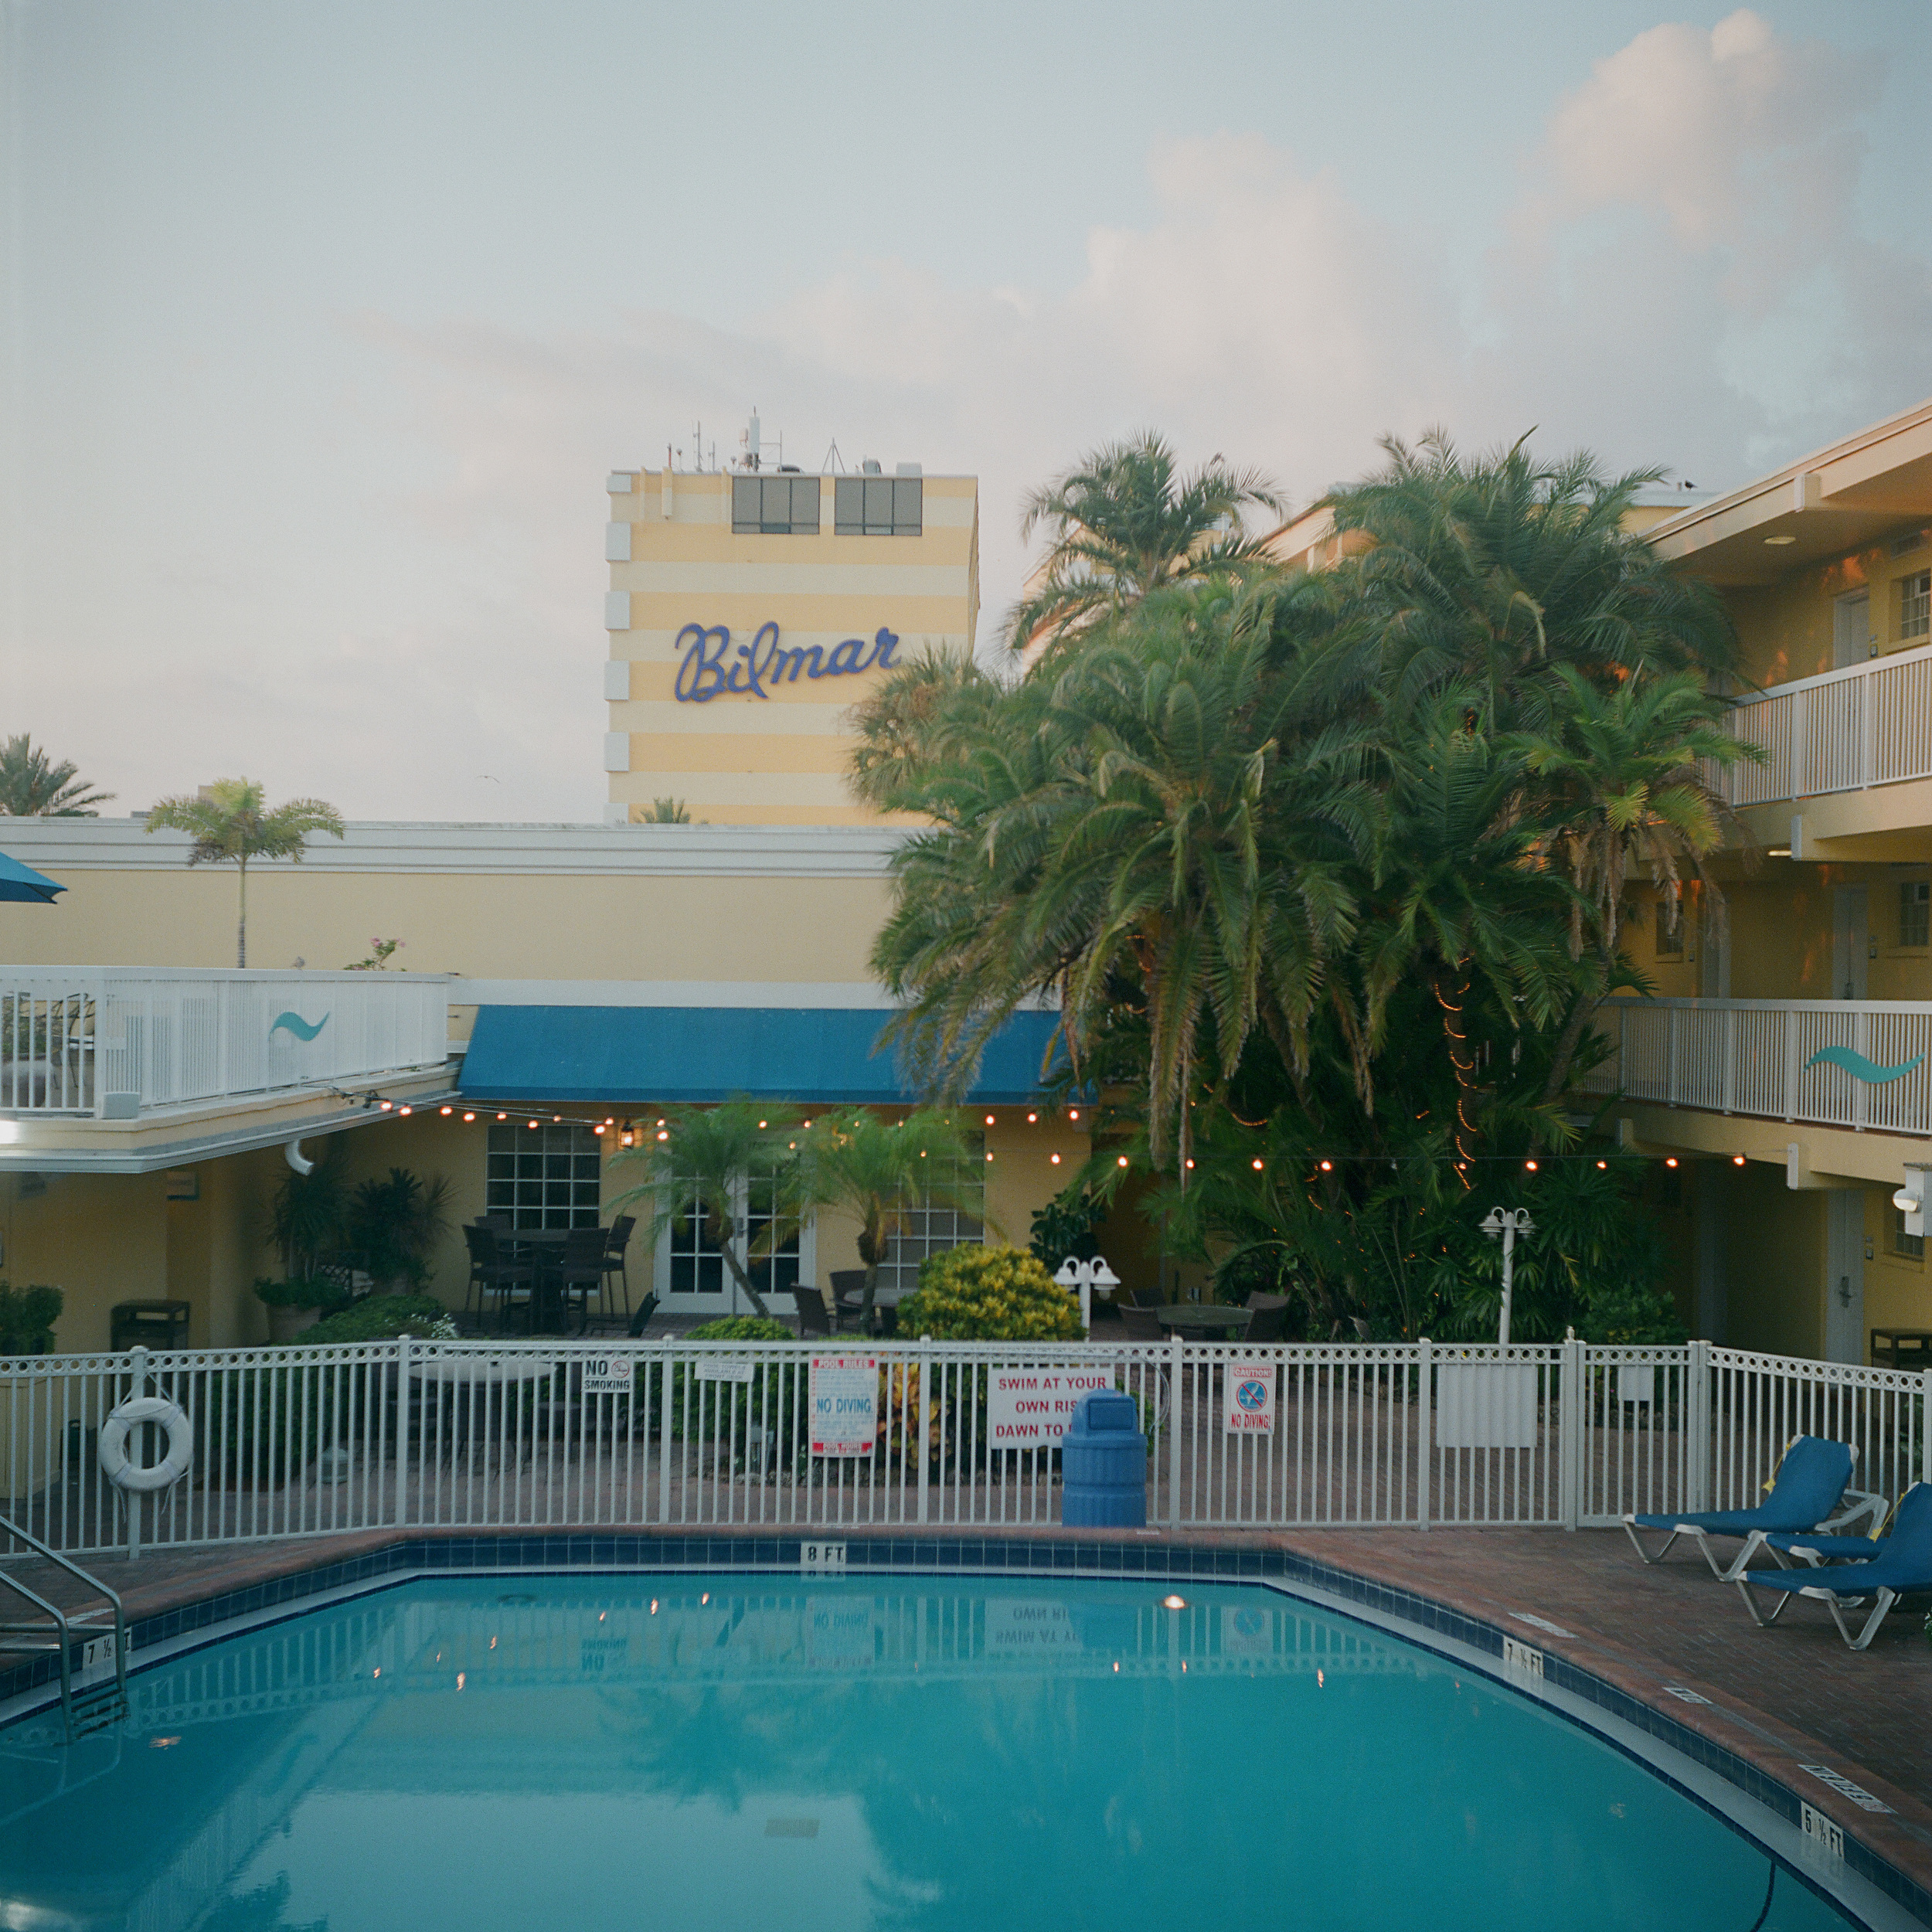  Bilmar Hotel,  Treasure Island,  St. Petersburg, FL. July, 2014 